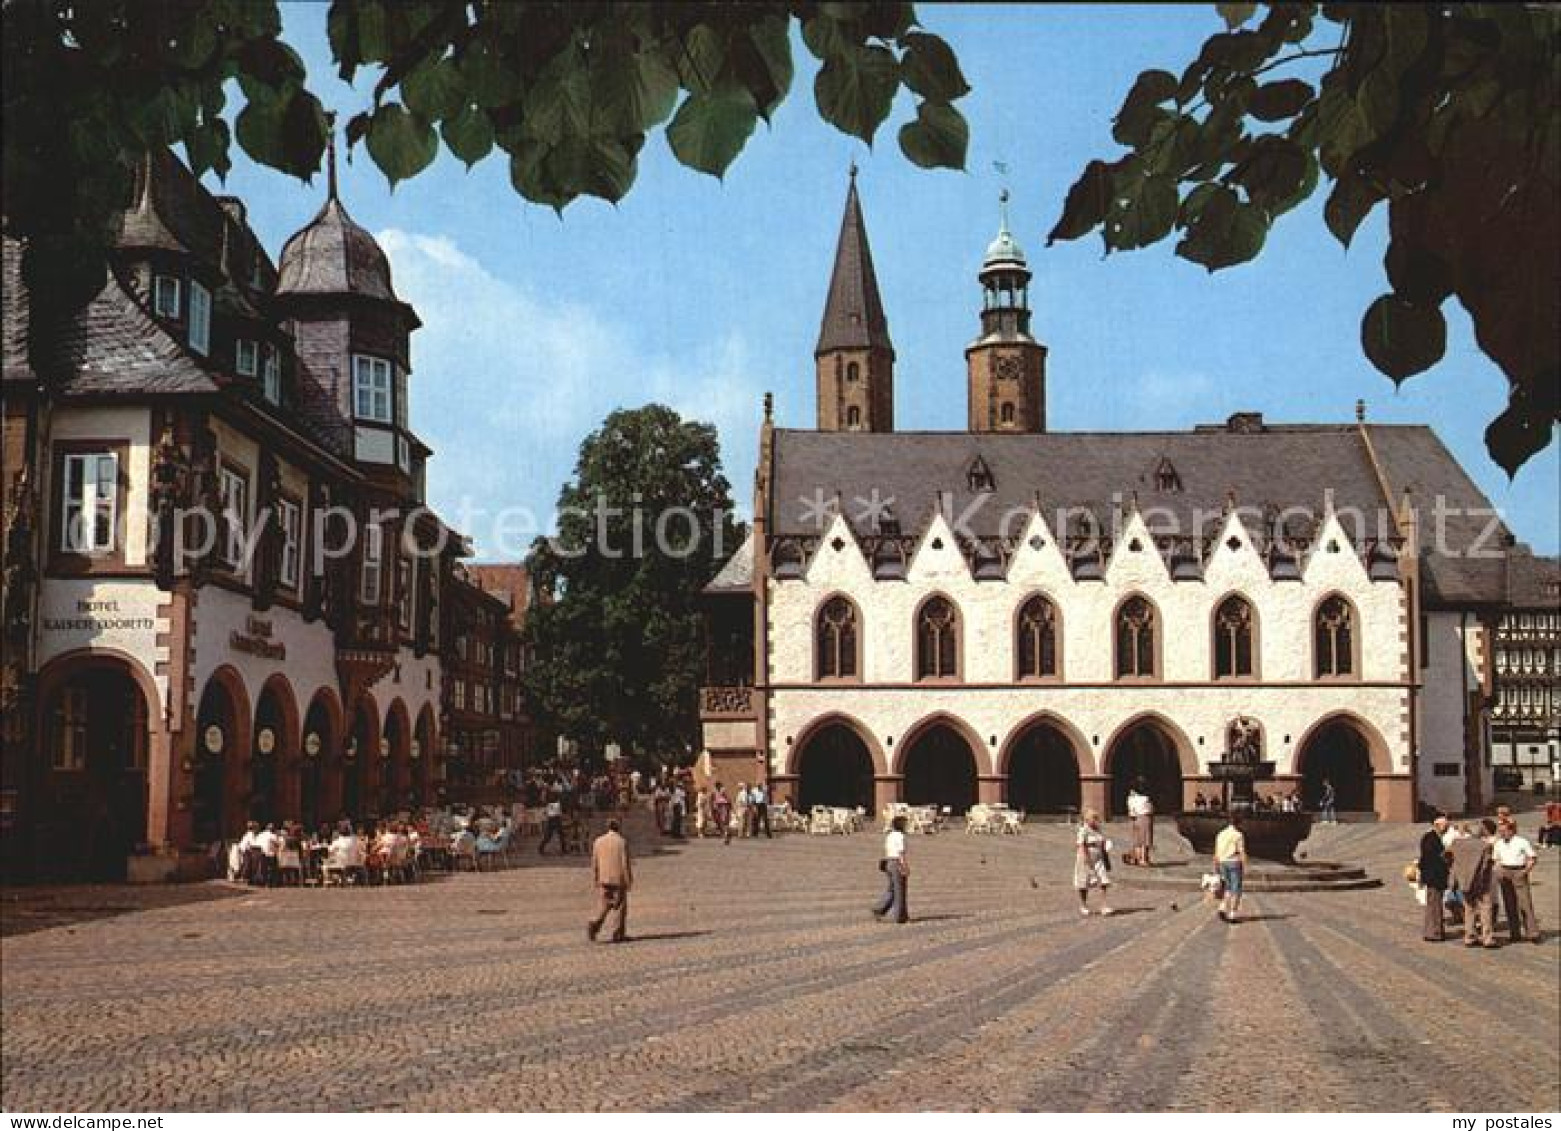 72603569 Goslar Marktplatz Mit Kaiser Worth Und Rathaus Goslar - Goslar